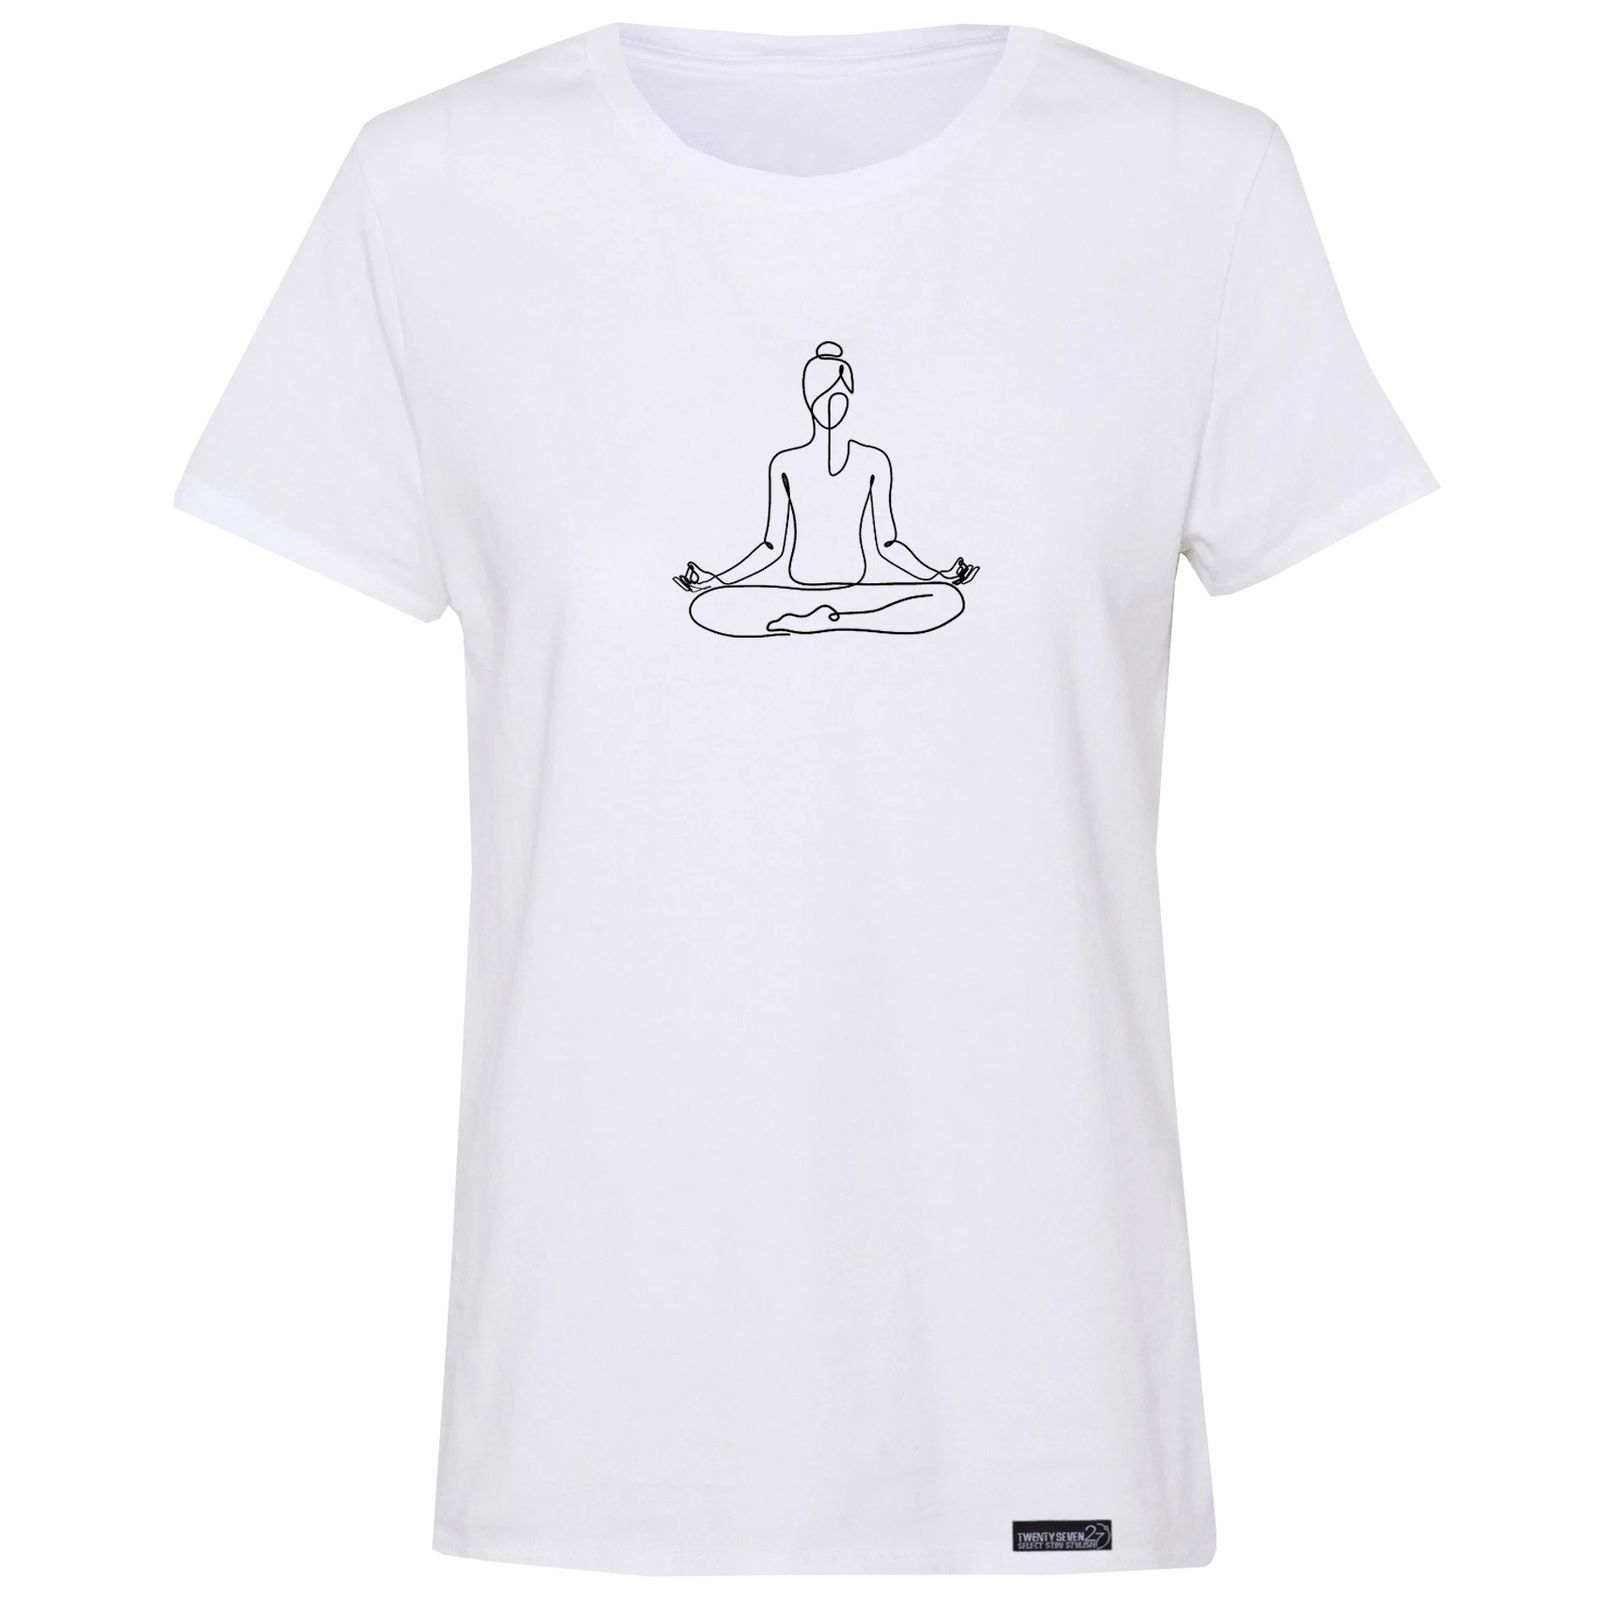 تی شرت آستین کوتاه زنانه 27 مدل یوگا کد RN552 -  - 1